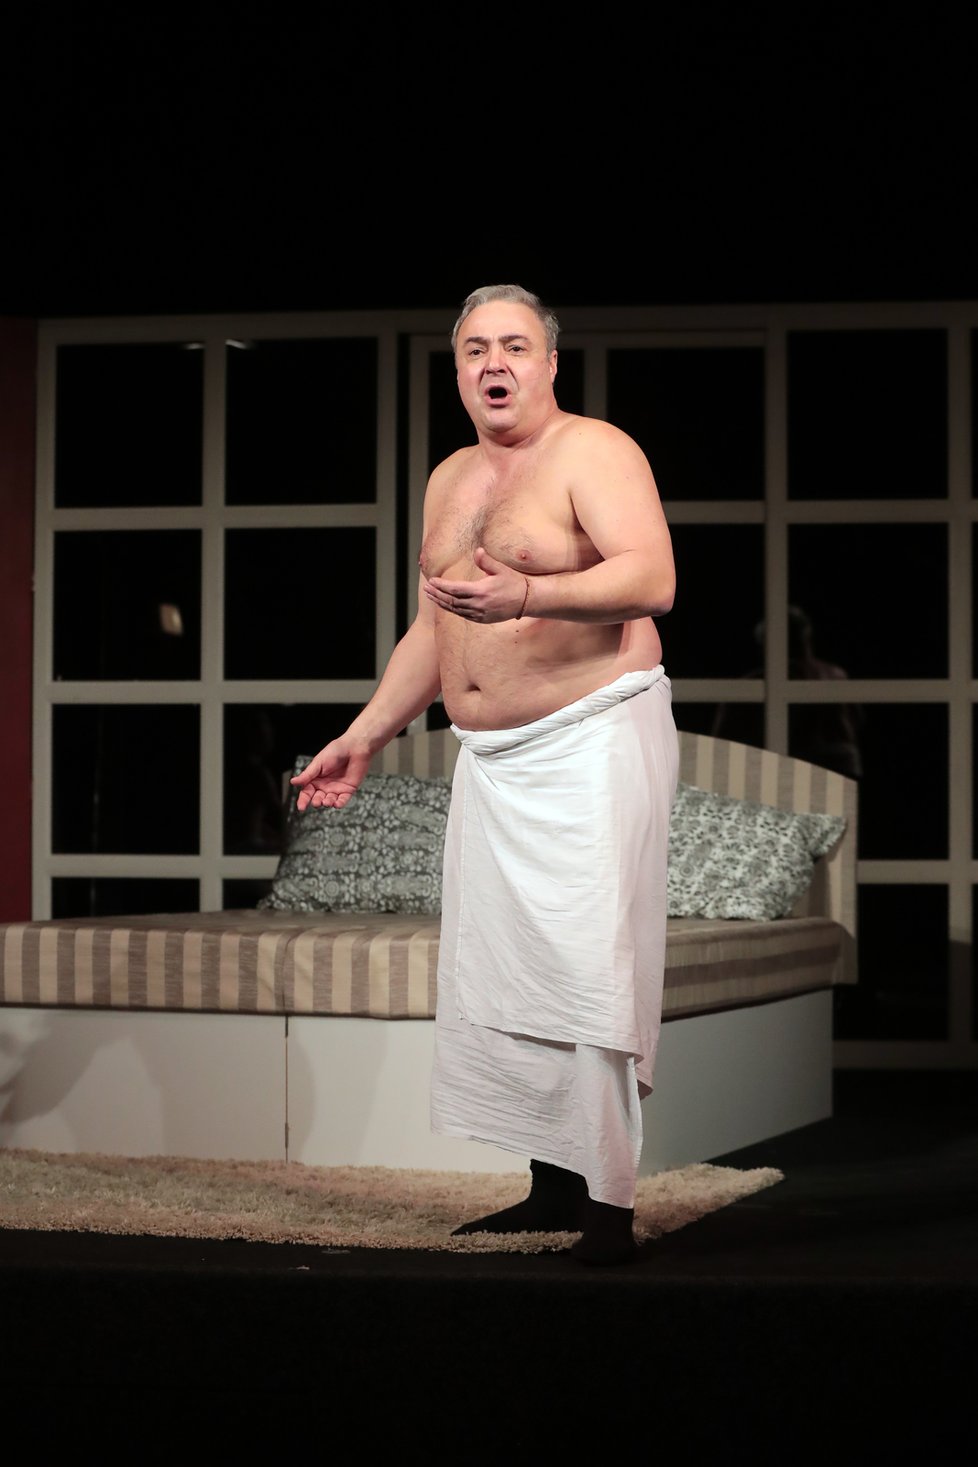 LEDEN 2019: V divadelní hře Dva nahatý chlapi mu přes prostěradlo přetékalo břicho.